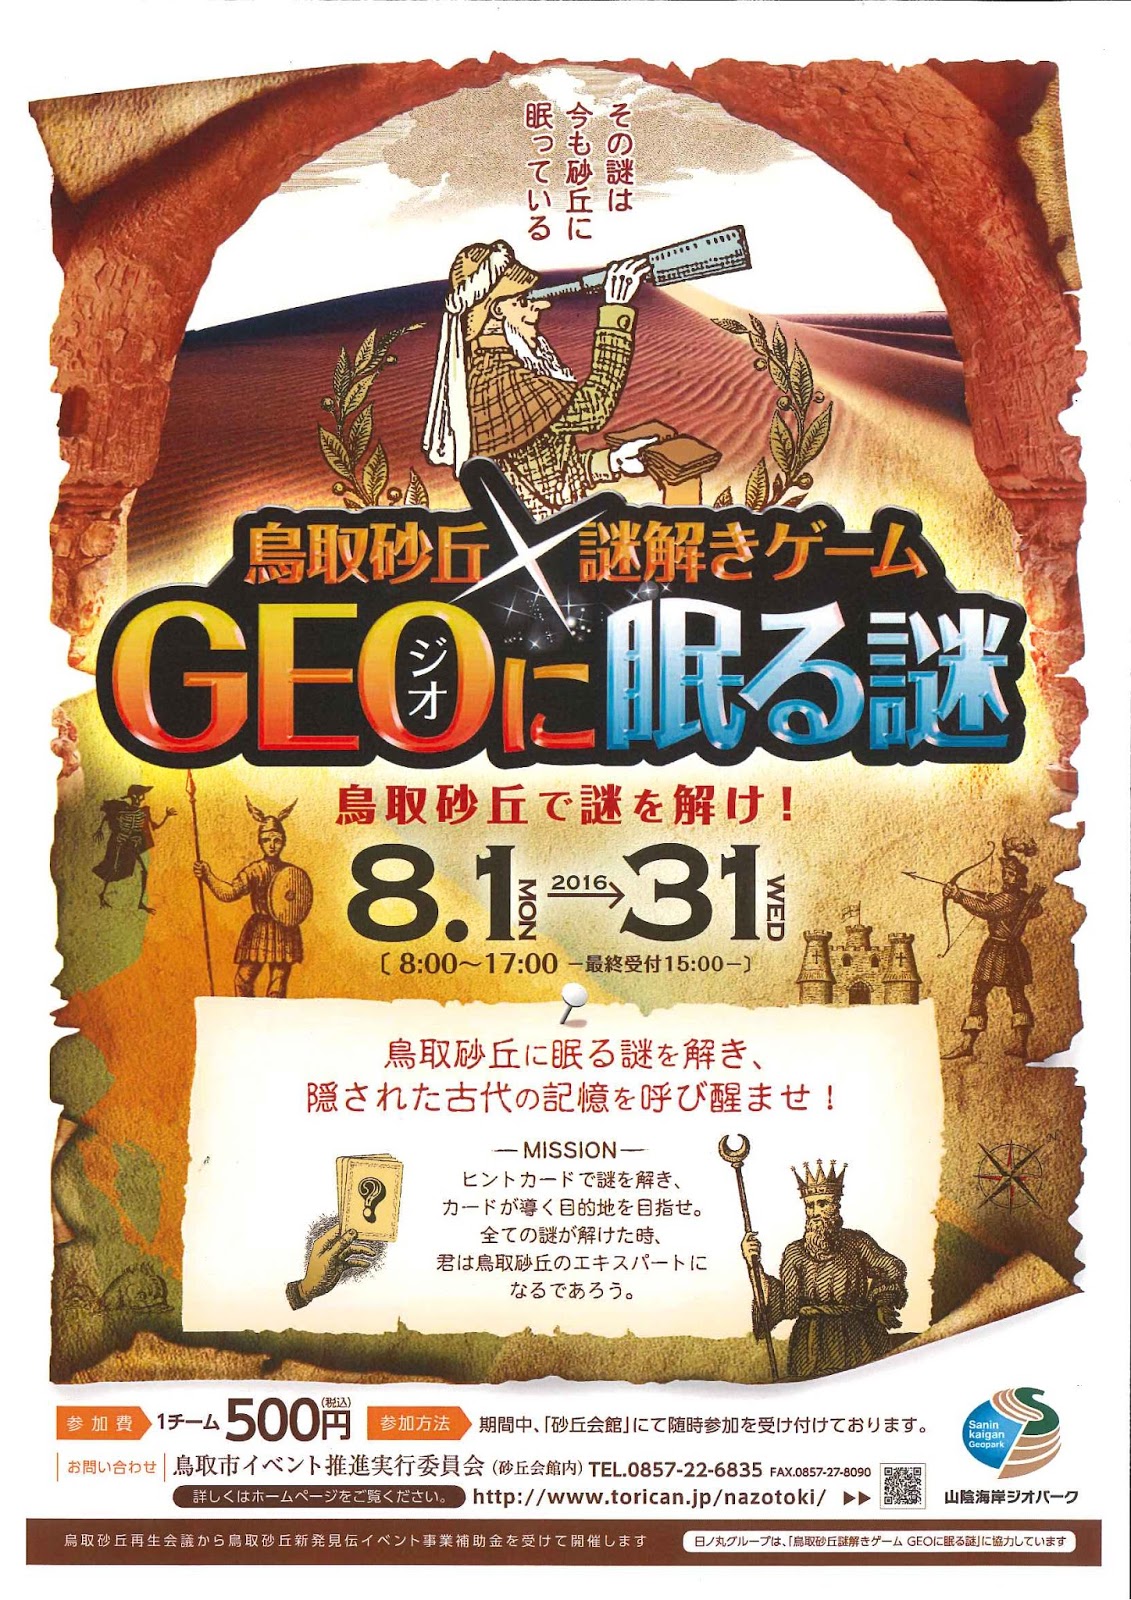 鳥取砂丘謎解きゲーム Geoに眠る謎 ポスターができました